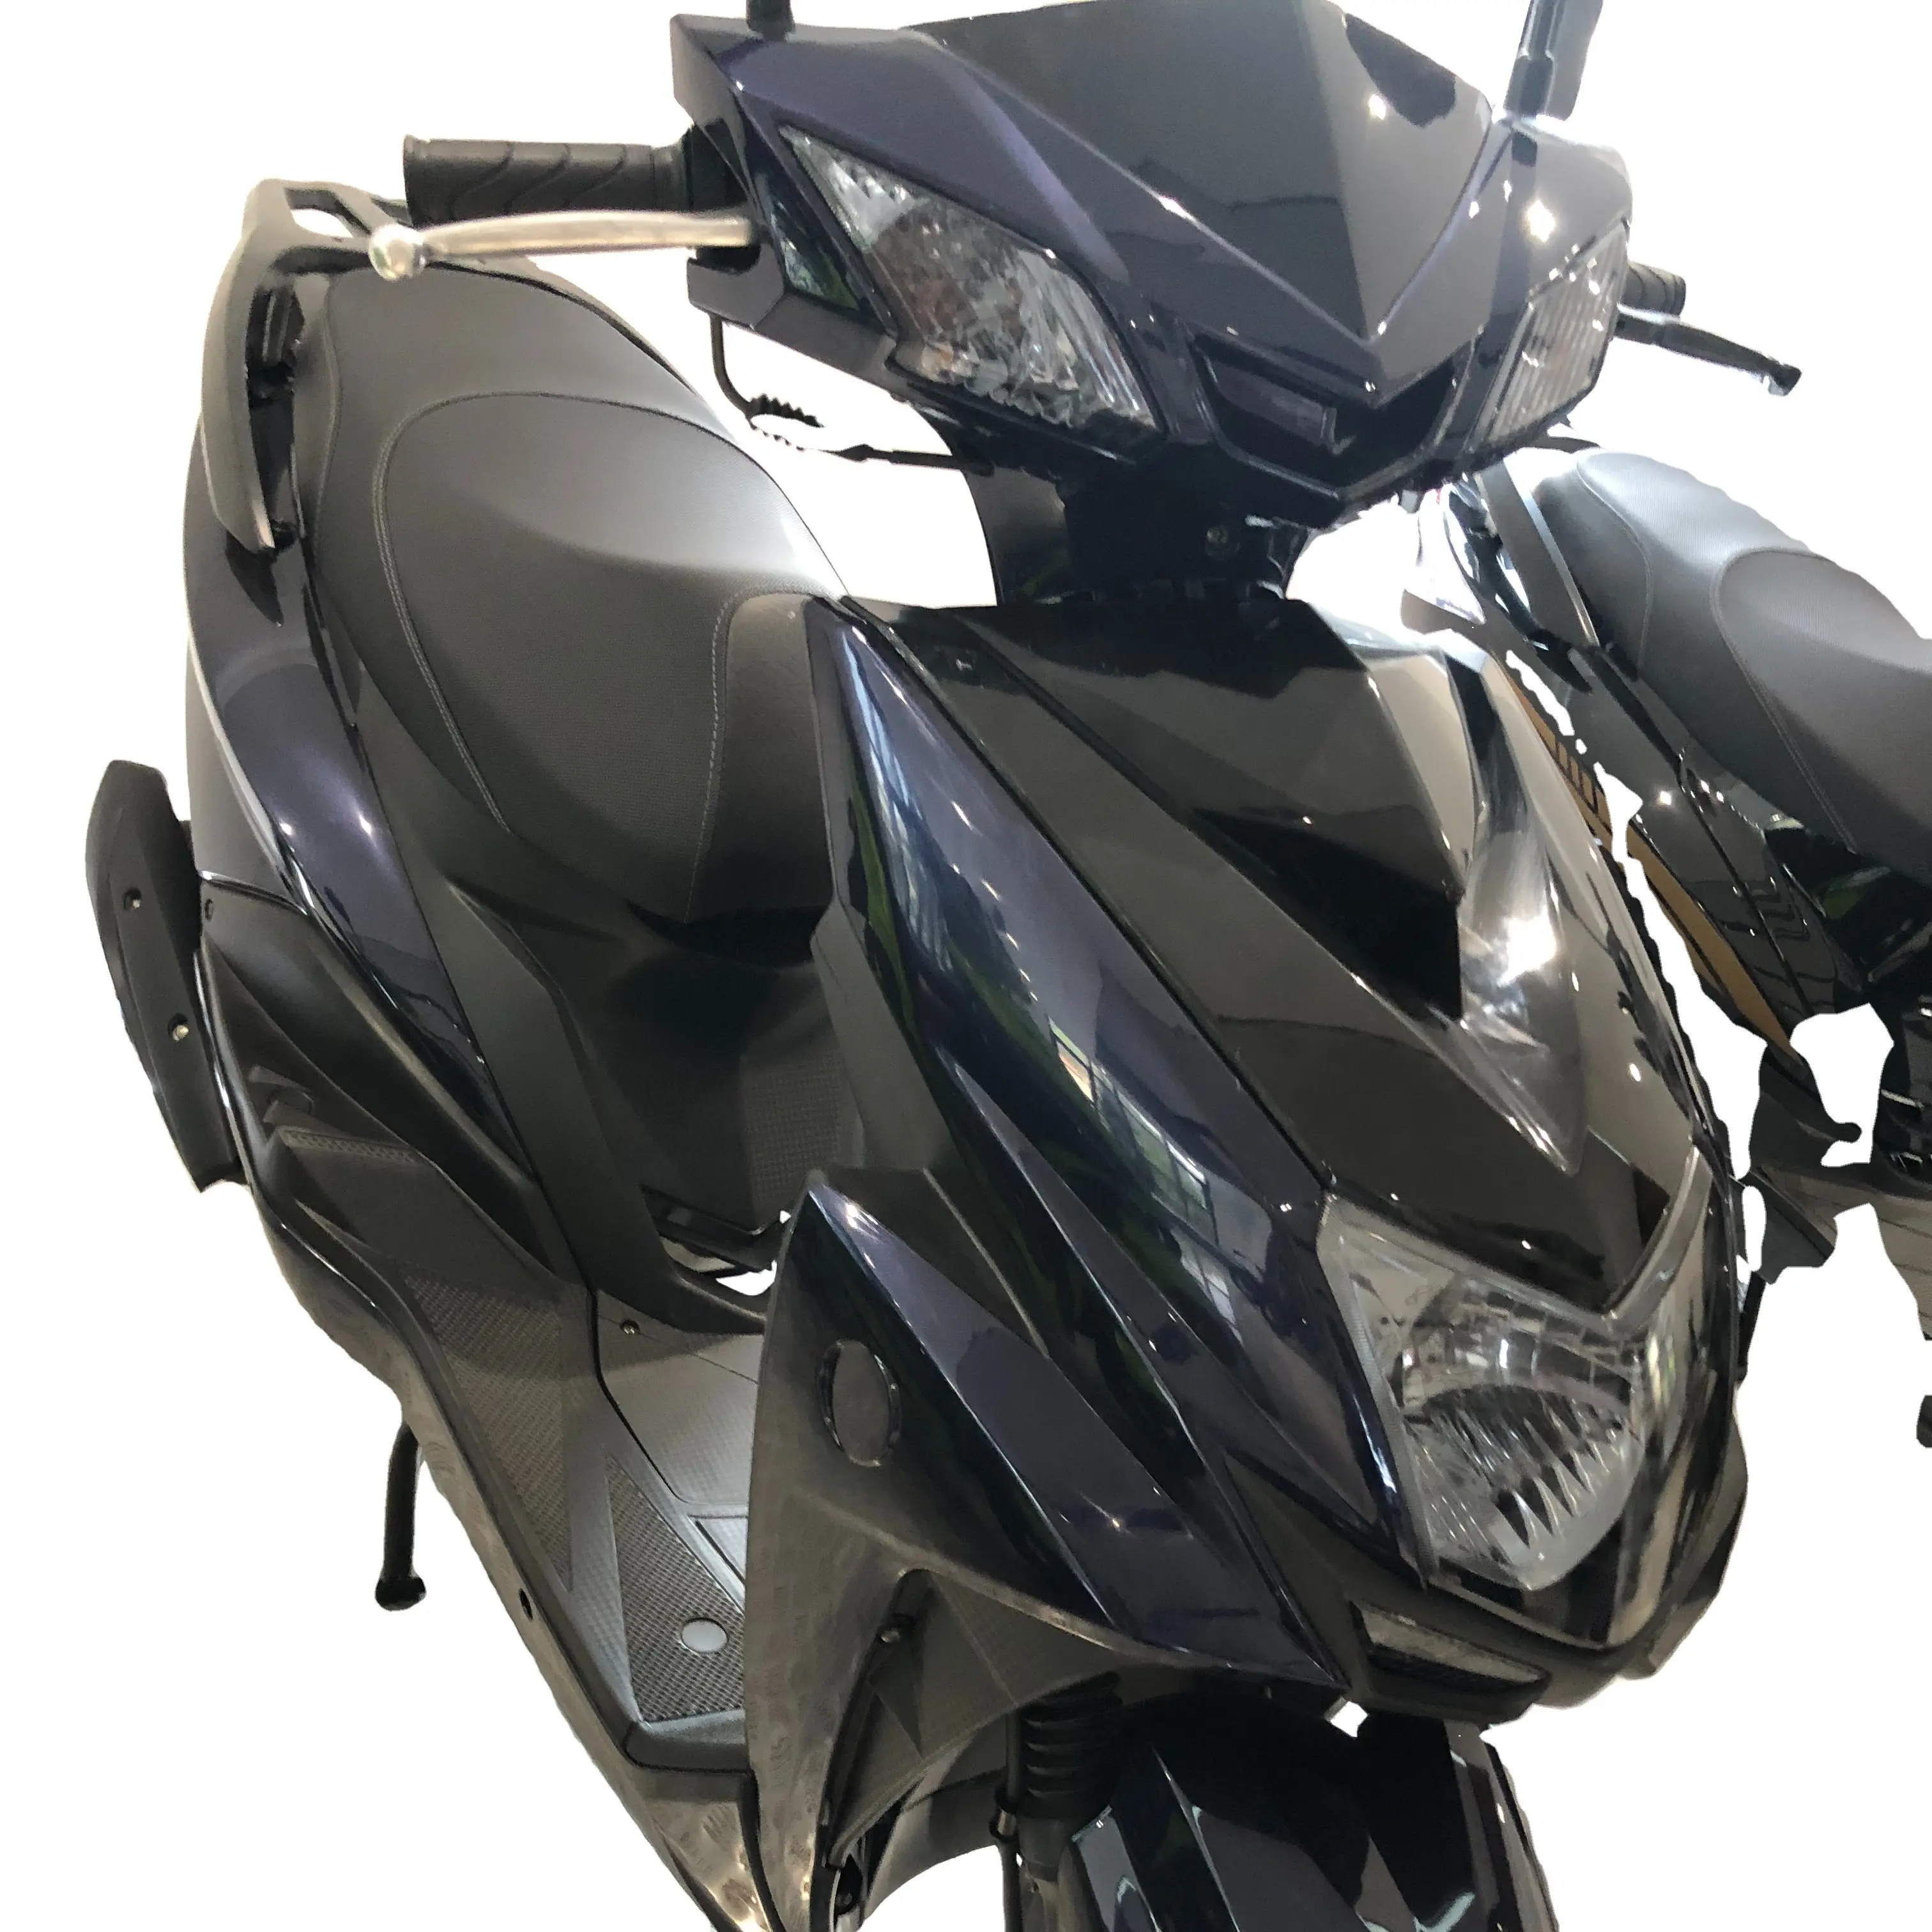 Дешевый китайский мотоцикл CG125 CG150 CG175 экономичная модель уличного мотоцикла высокого качества